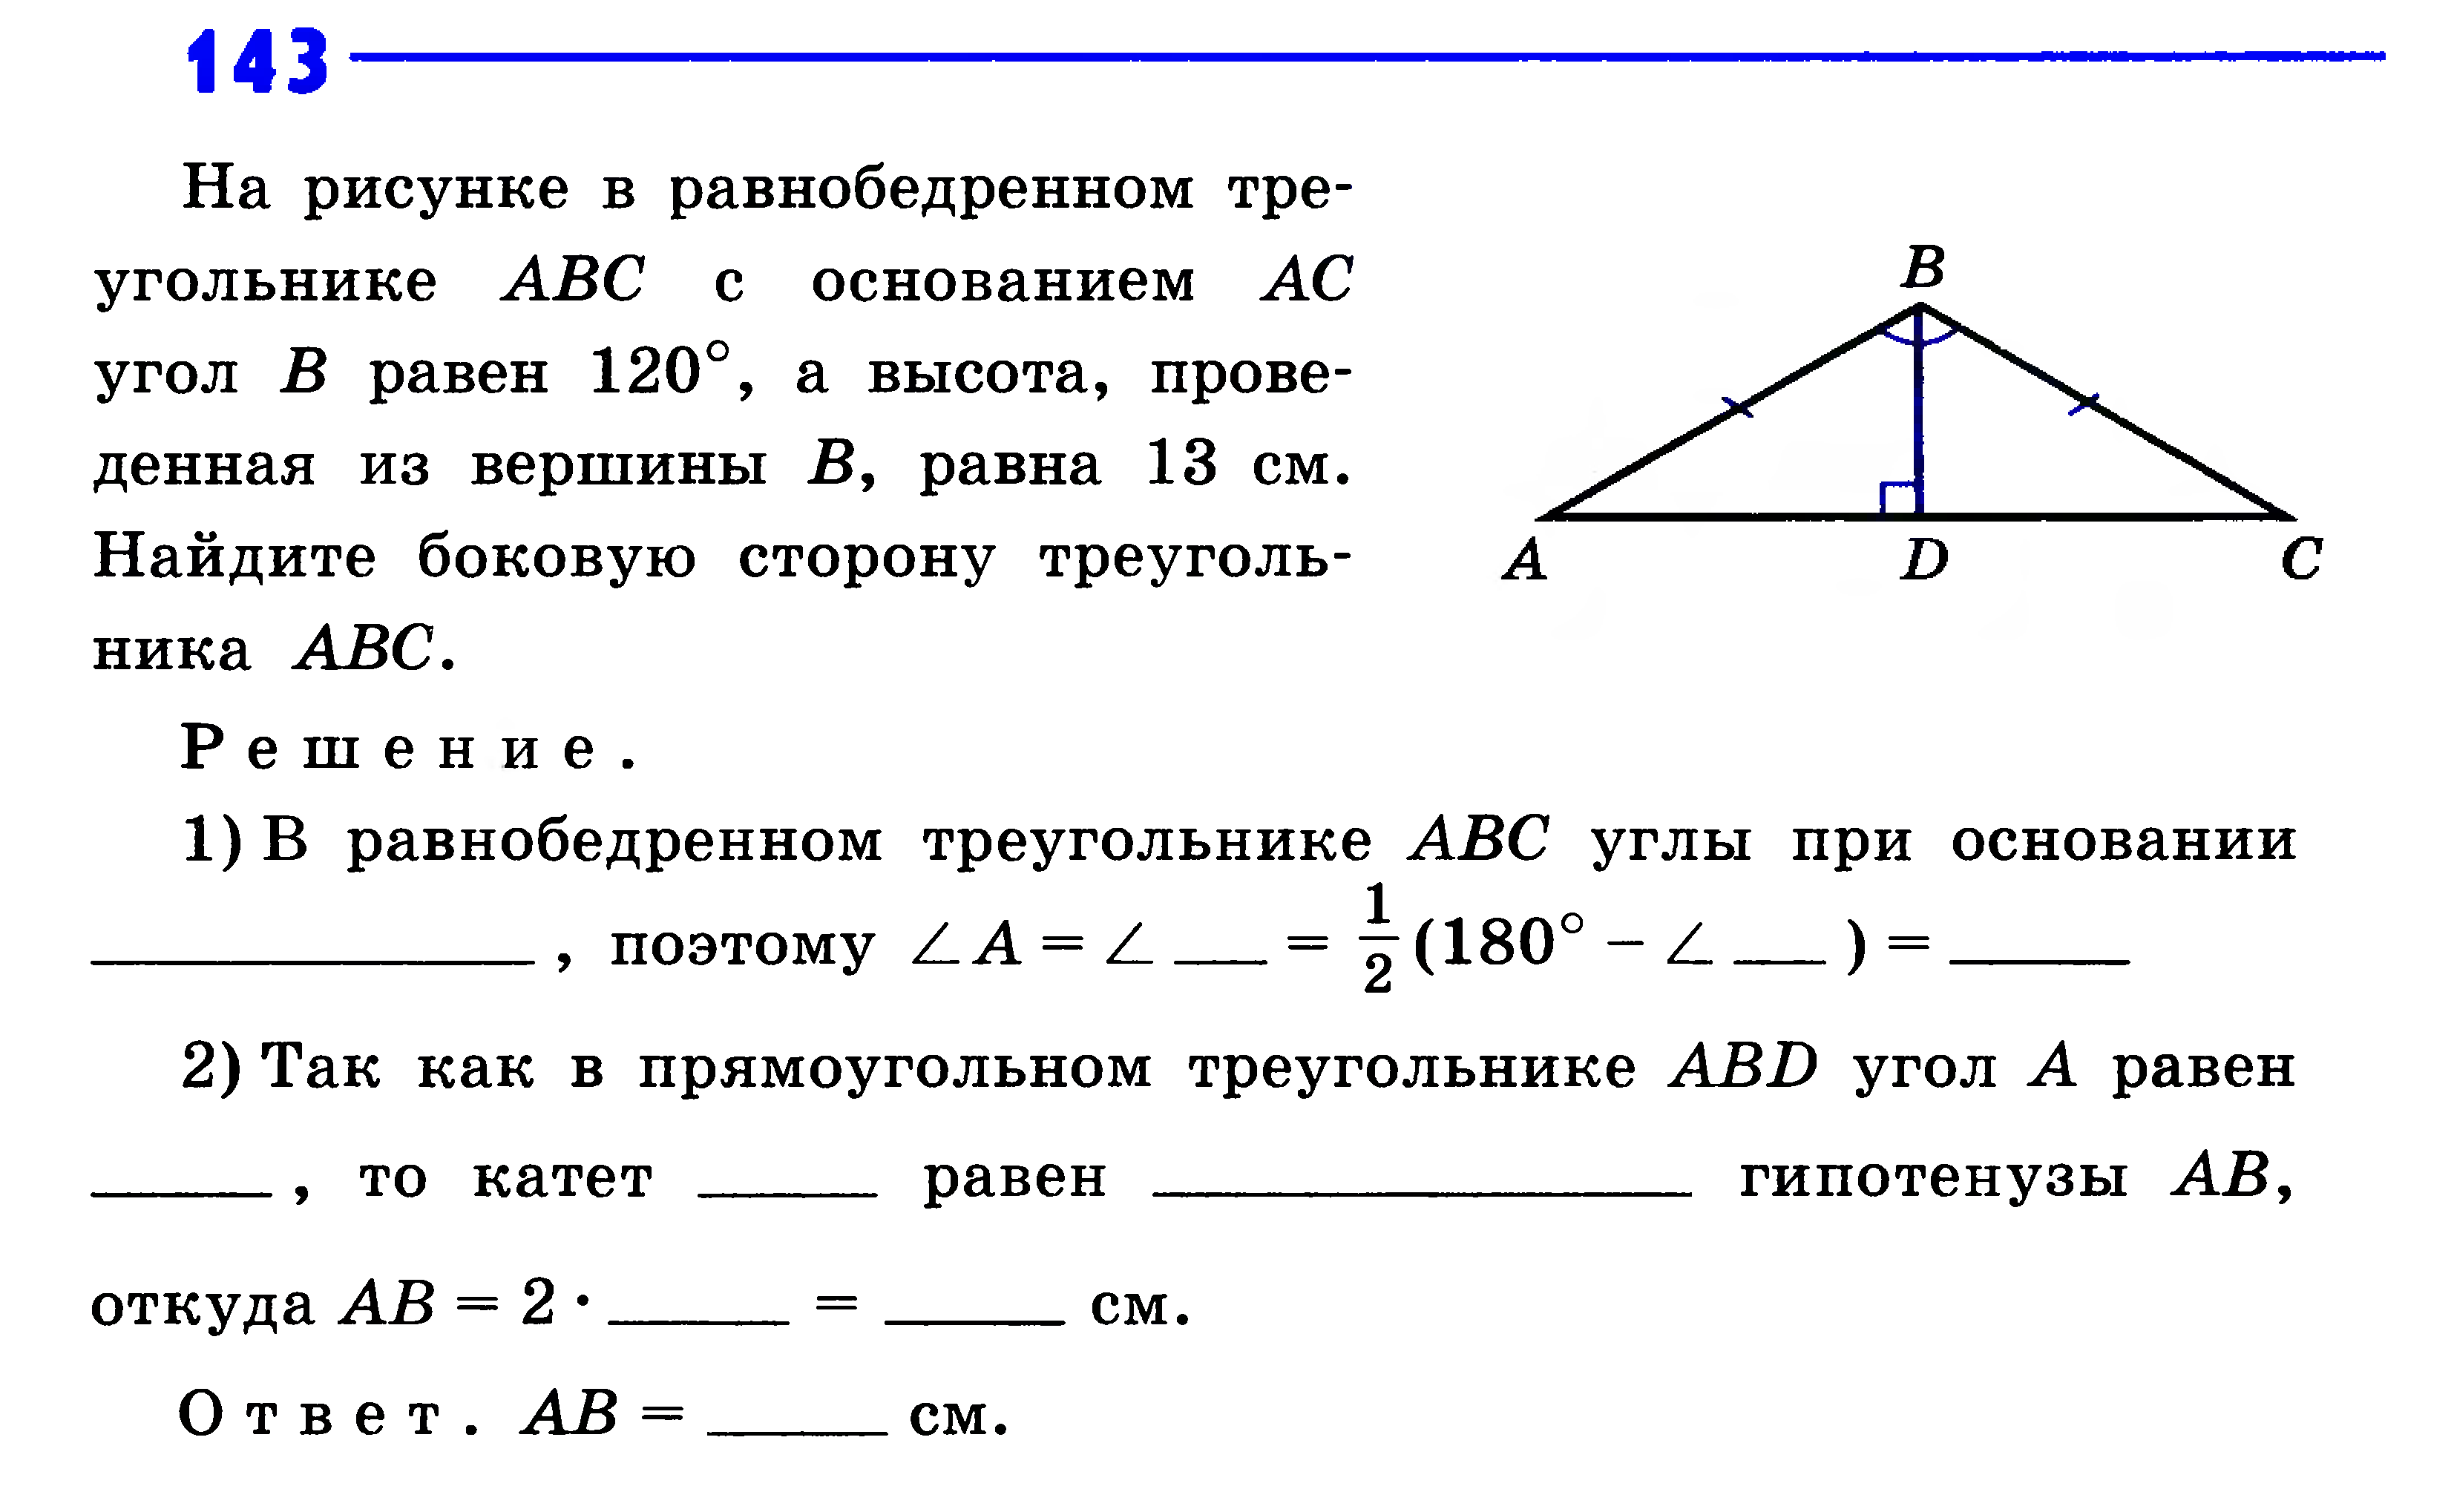 В равнобедренном треугольнике АВС С основанием АС угол в равен 120